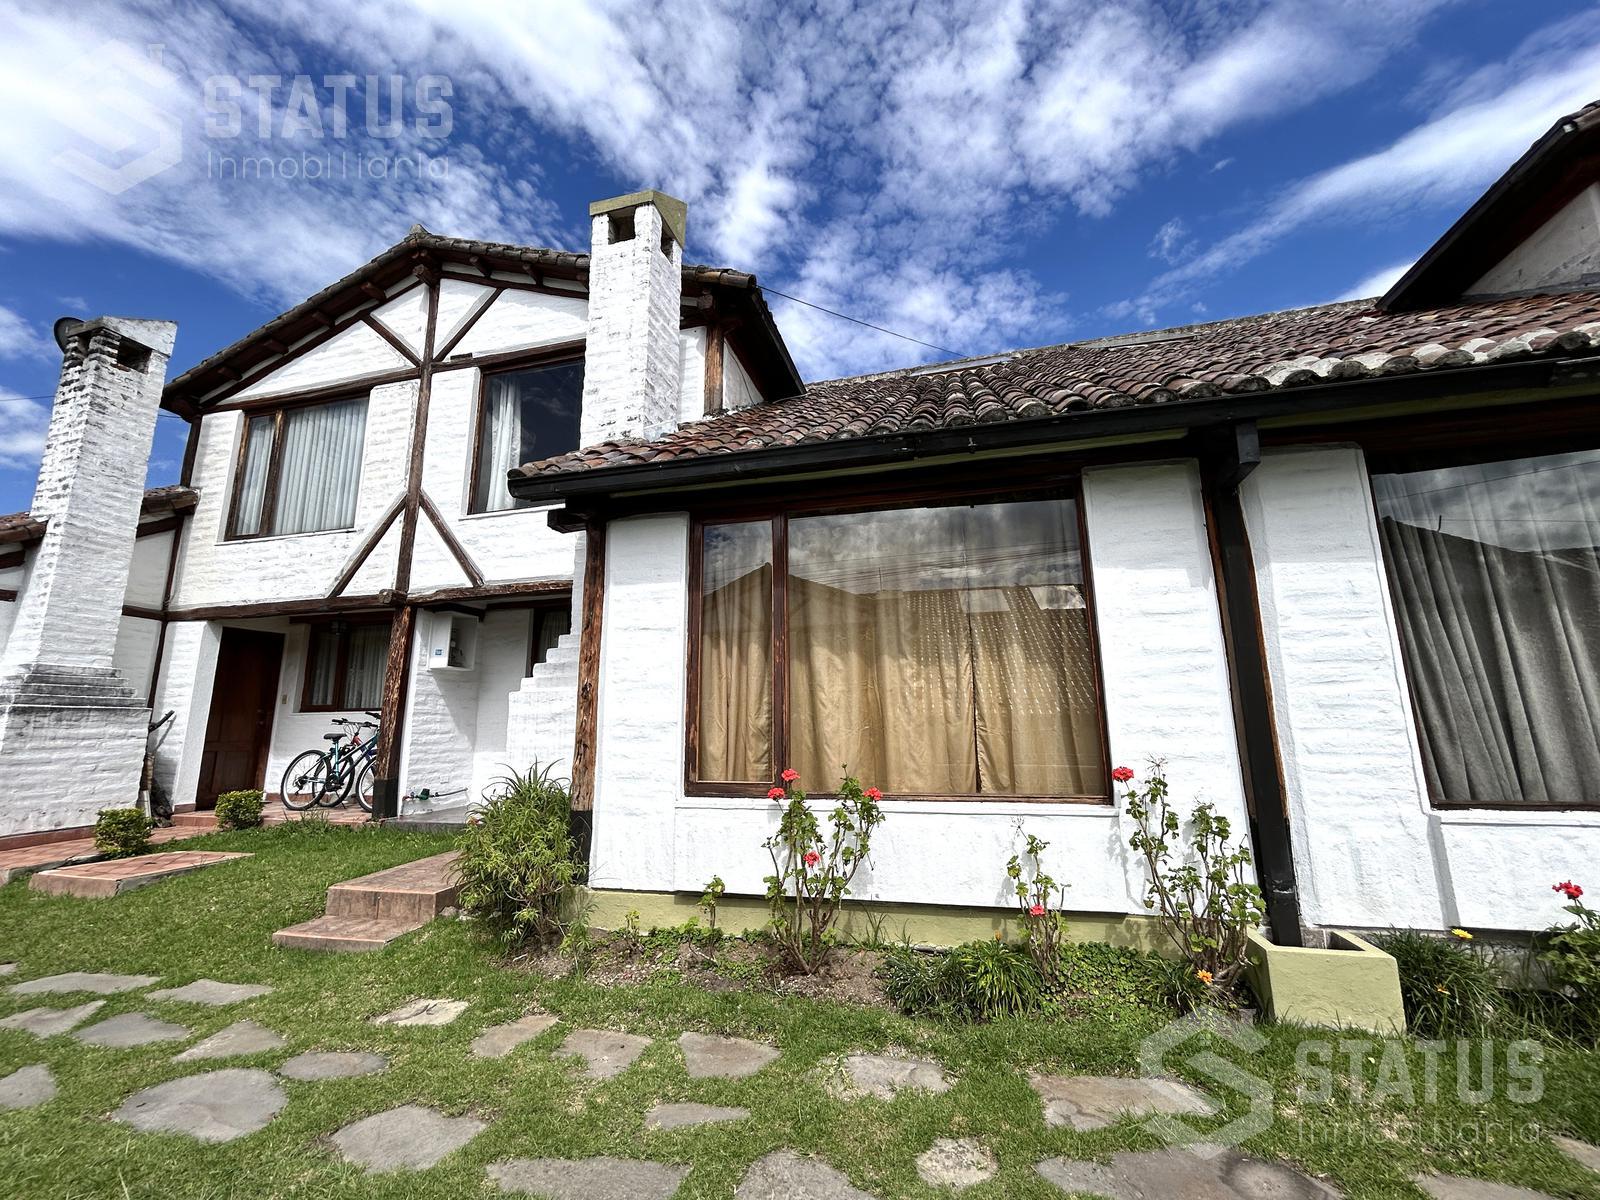 Se vende casa en conjunto 134m, 4 Dorm., 1 garaje, sector Sangolquí – Los Chillos $87.500